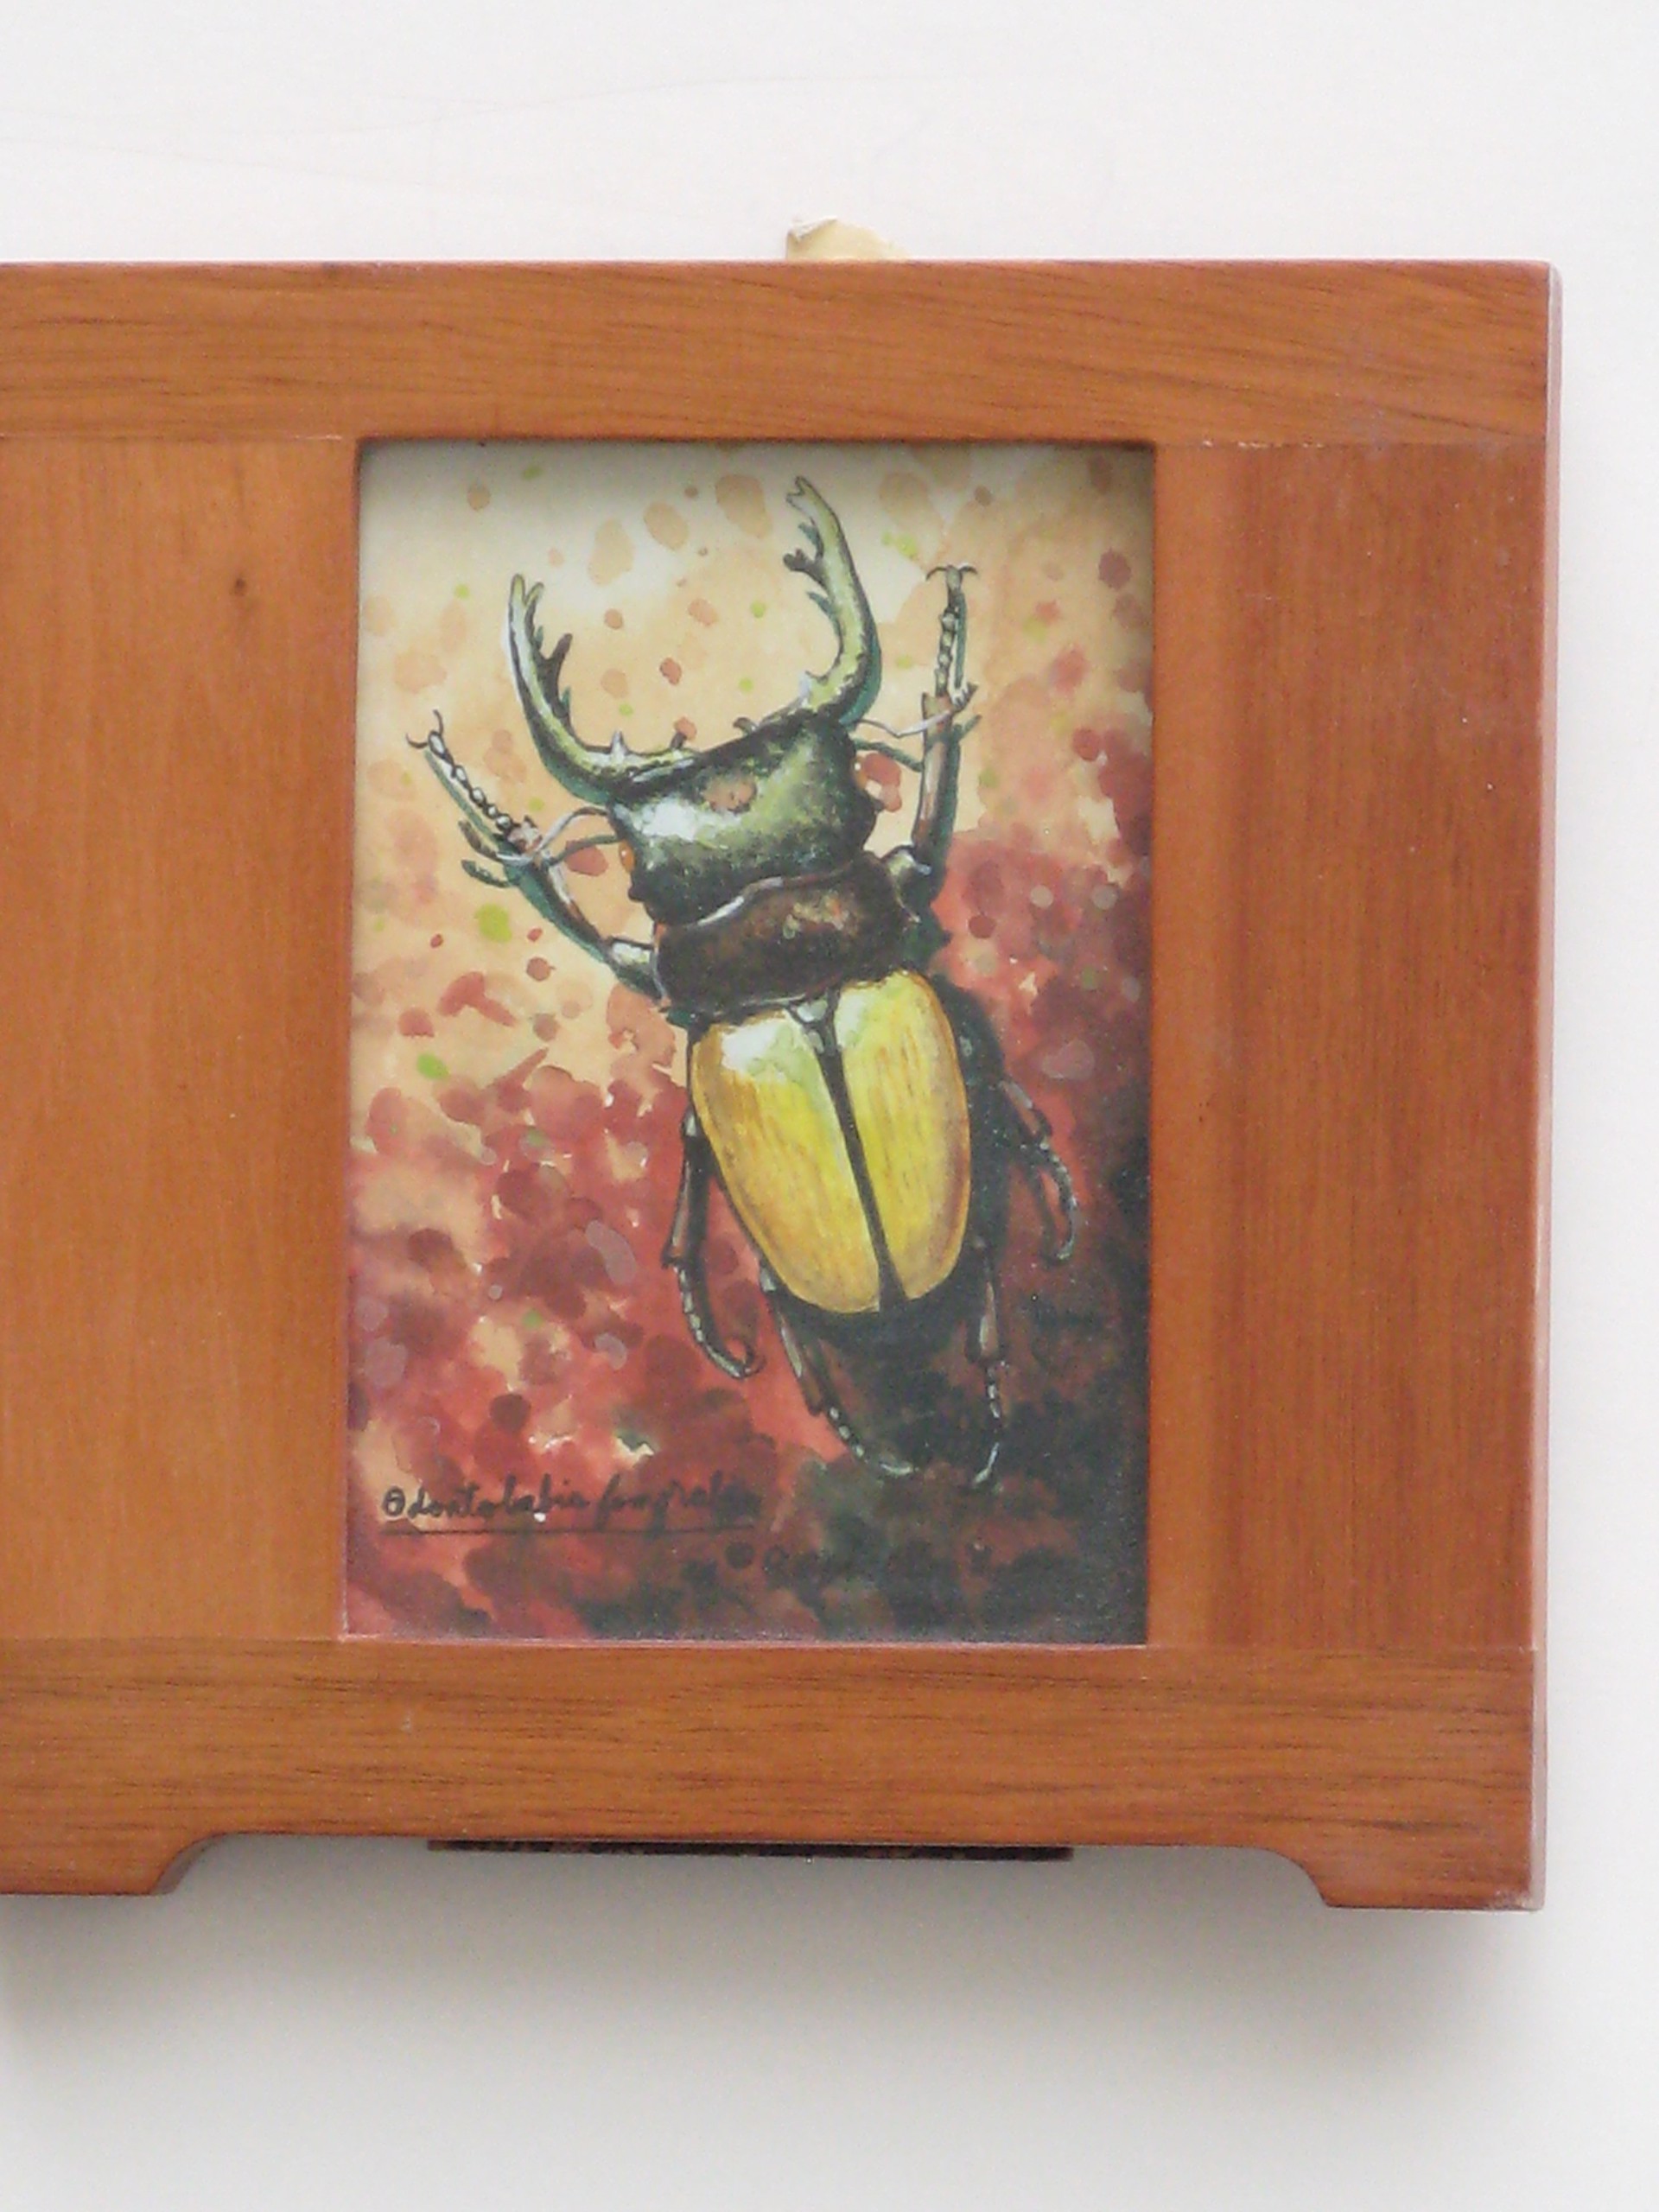 Beetle 1 by Ralph Allen Massey